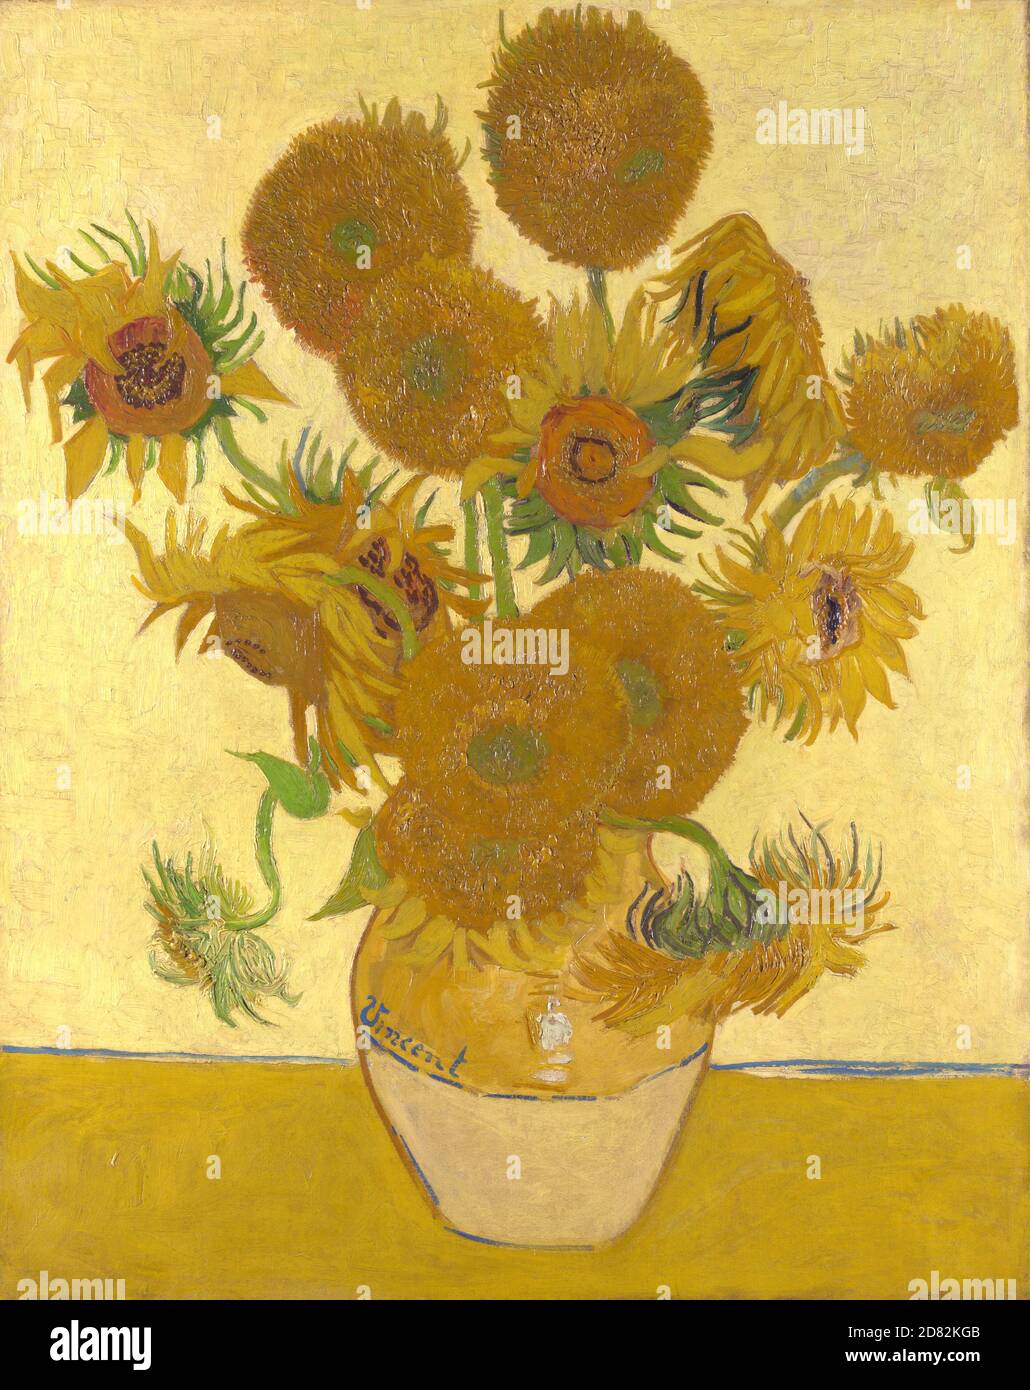 Titre: Tournesol Créateur: Vincent van Gogh Date: 1888 Moyen: Huile sur toile Dimensions: 92.1x73 cms lieu: National Gallery, Londres Banque D'Images